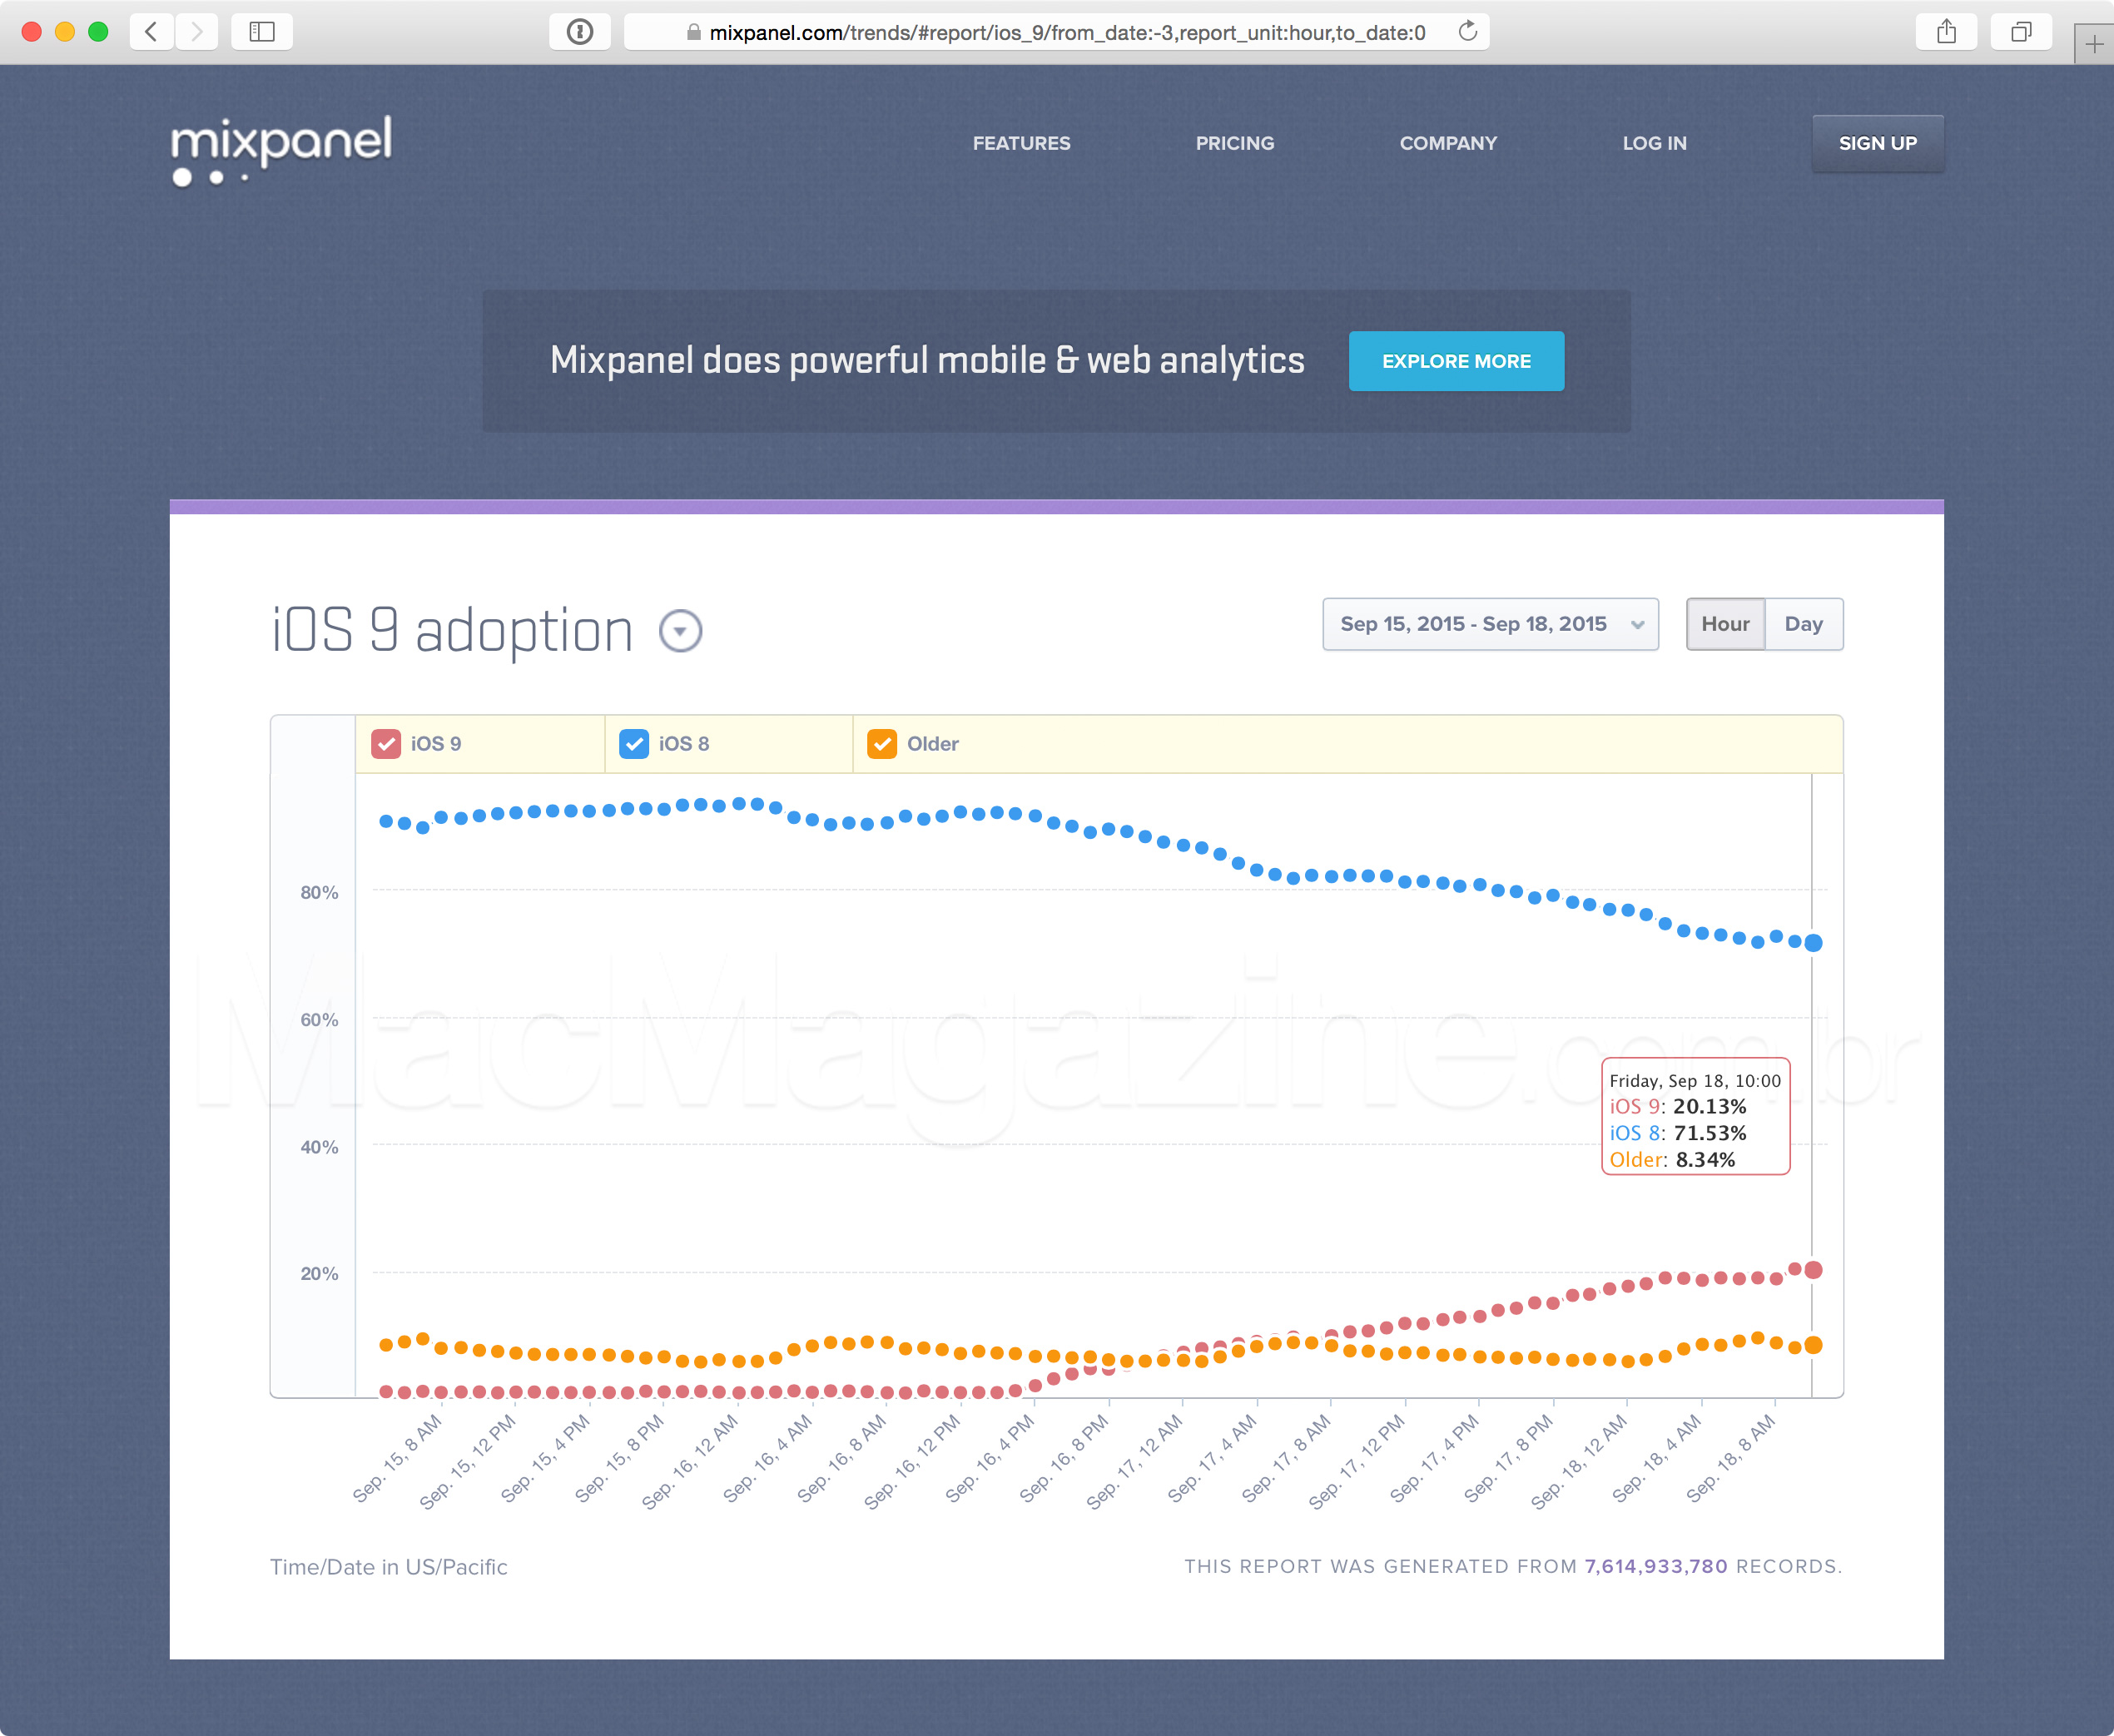 Gráfico de adoção do iOS 9